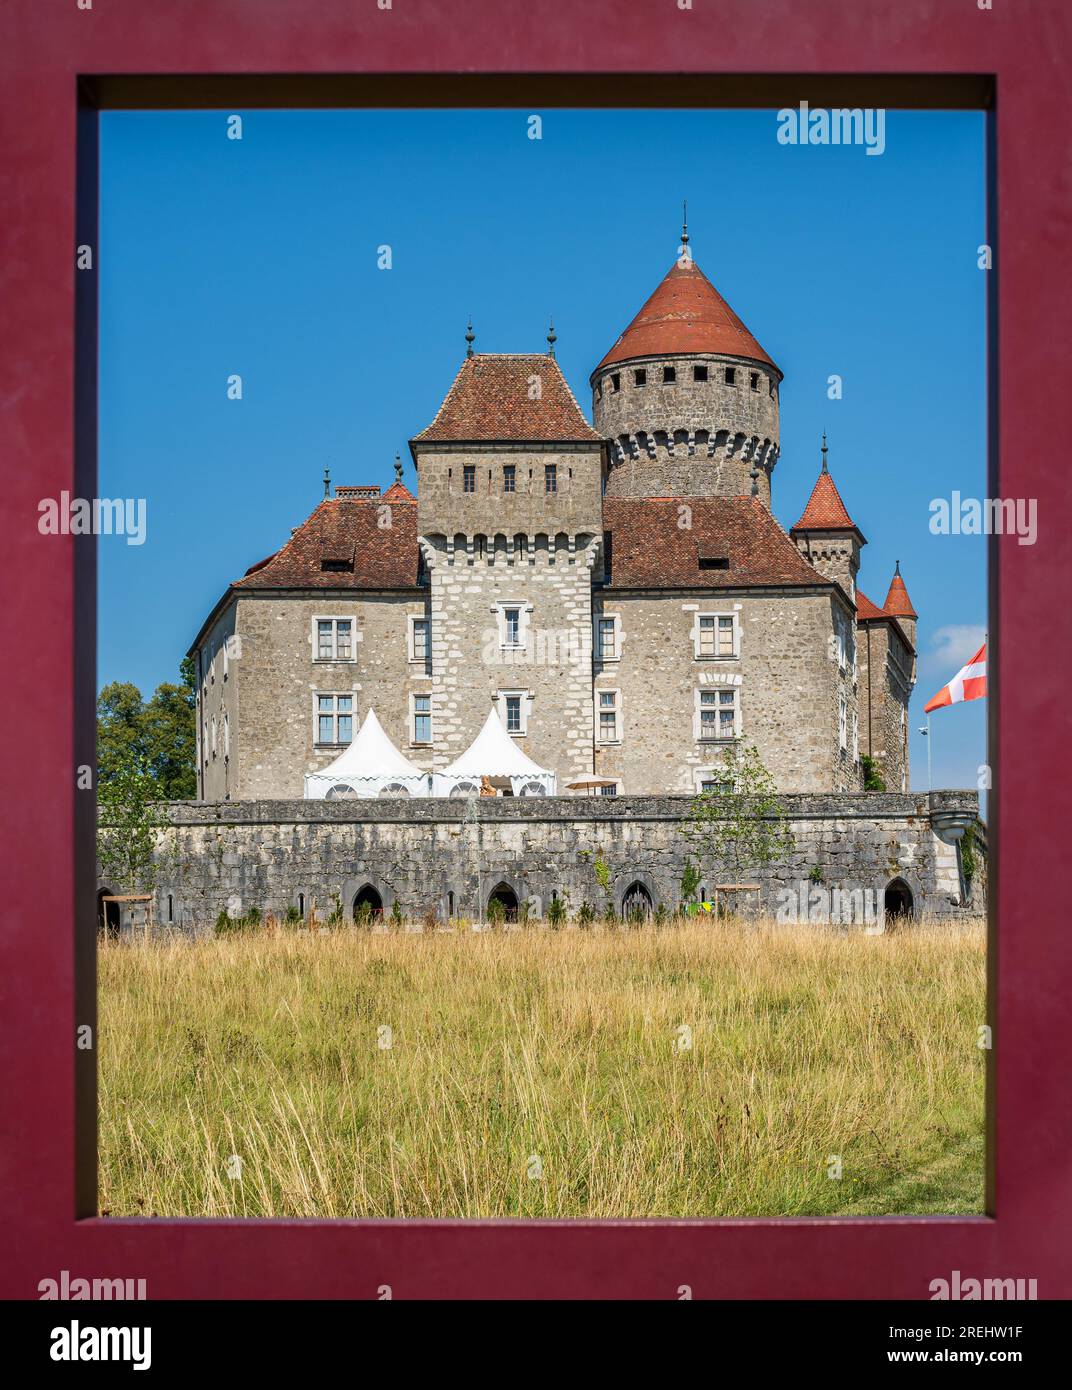 Castello di Montrottier all'interno di una cornice rossa in estate, situato a Lovagny, nel dipartimento dell'alta Savoia, in Francia. Foto Stock